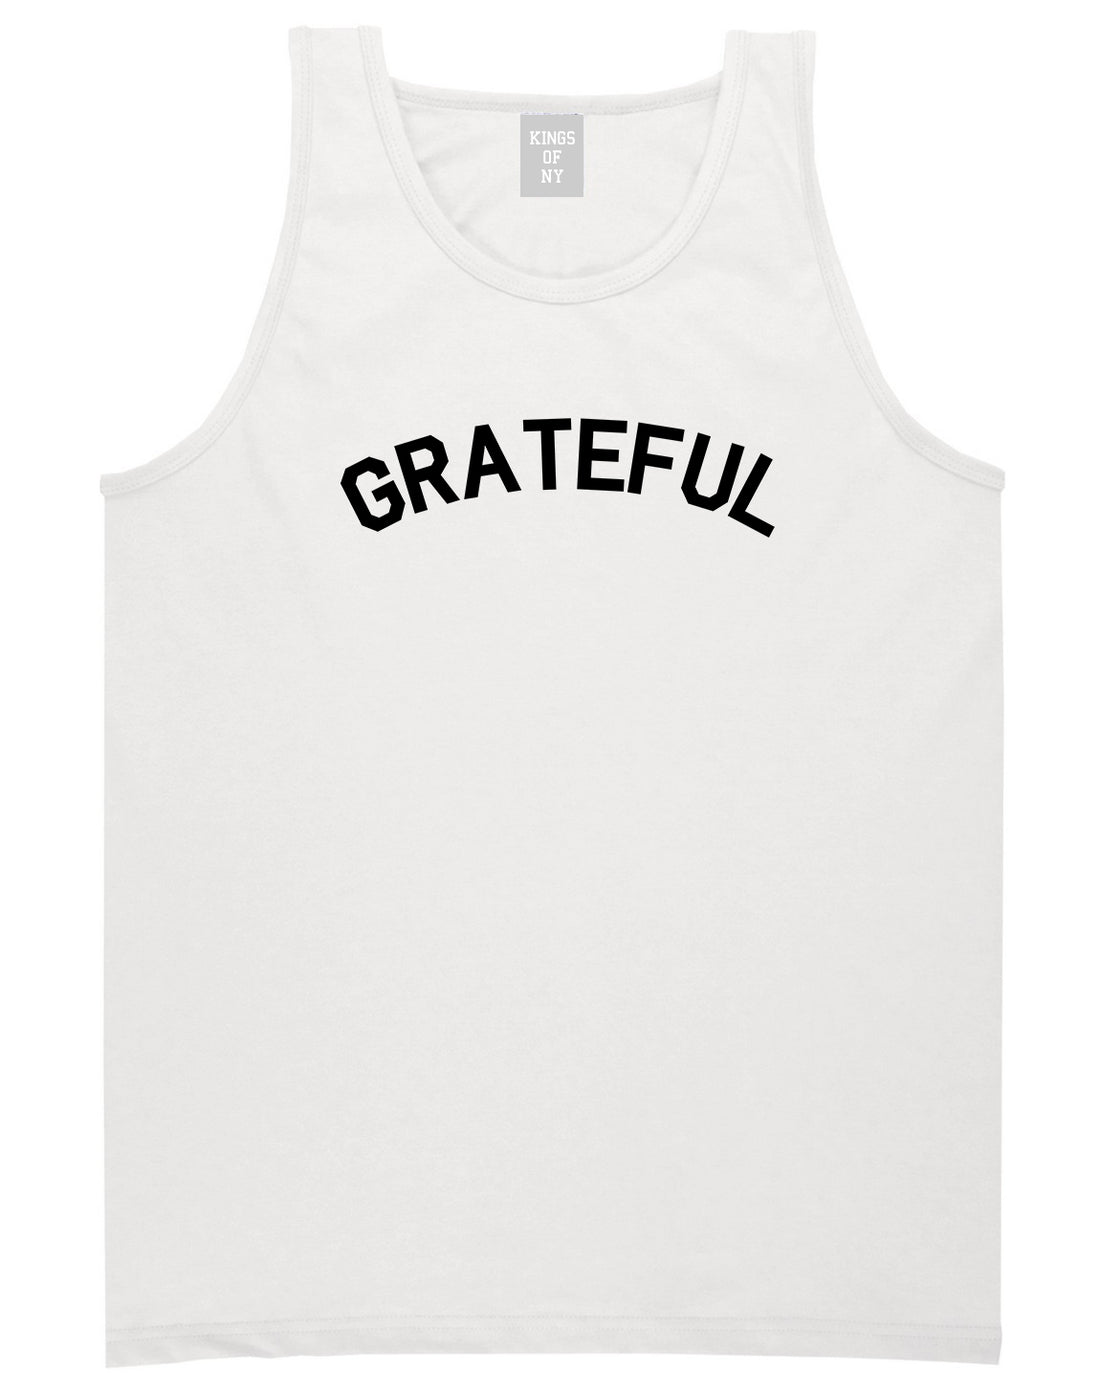 Grateful Thankful Mens Tank Top Shirt White